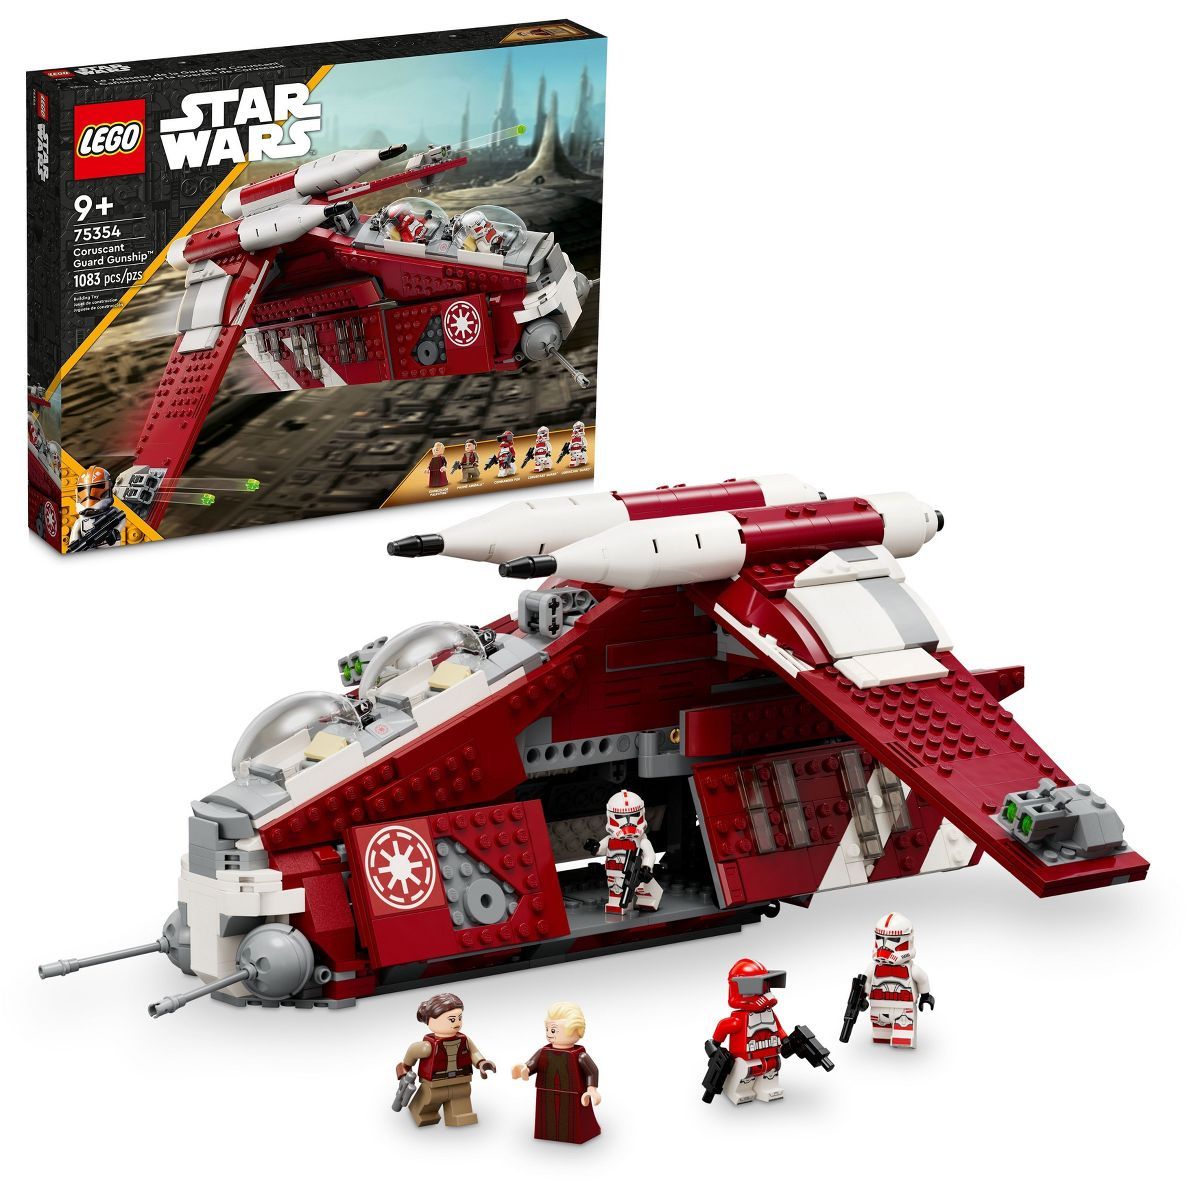 LEGO Star Wars: The Clone Wars Coruscant Guard Gunship 75354 | Target